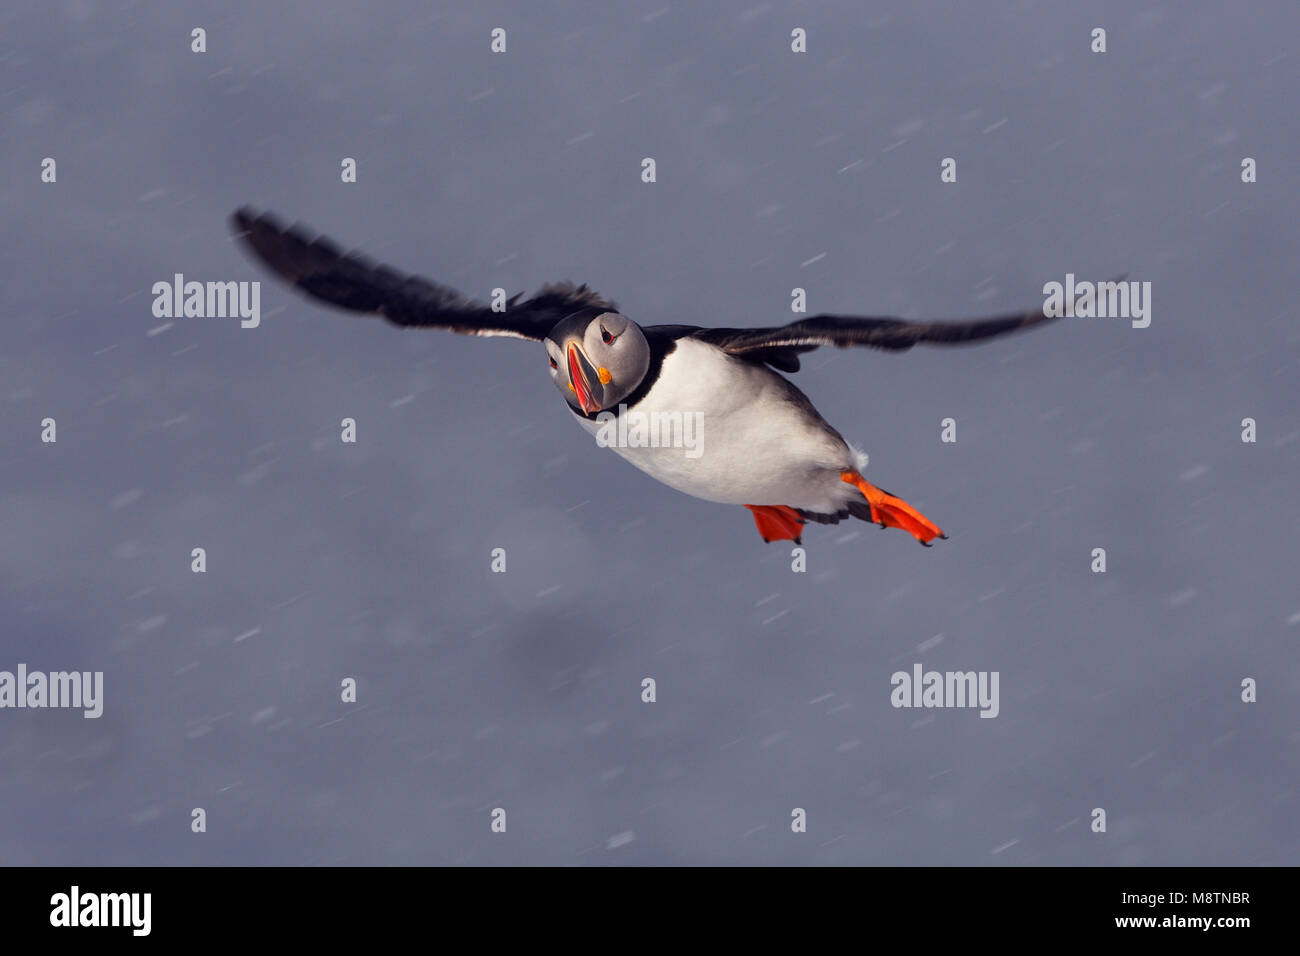 Papegaaiduiker vliegend in de sneeuw; Atlantic Puffin flying in snow Stock Photo